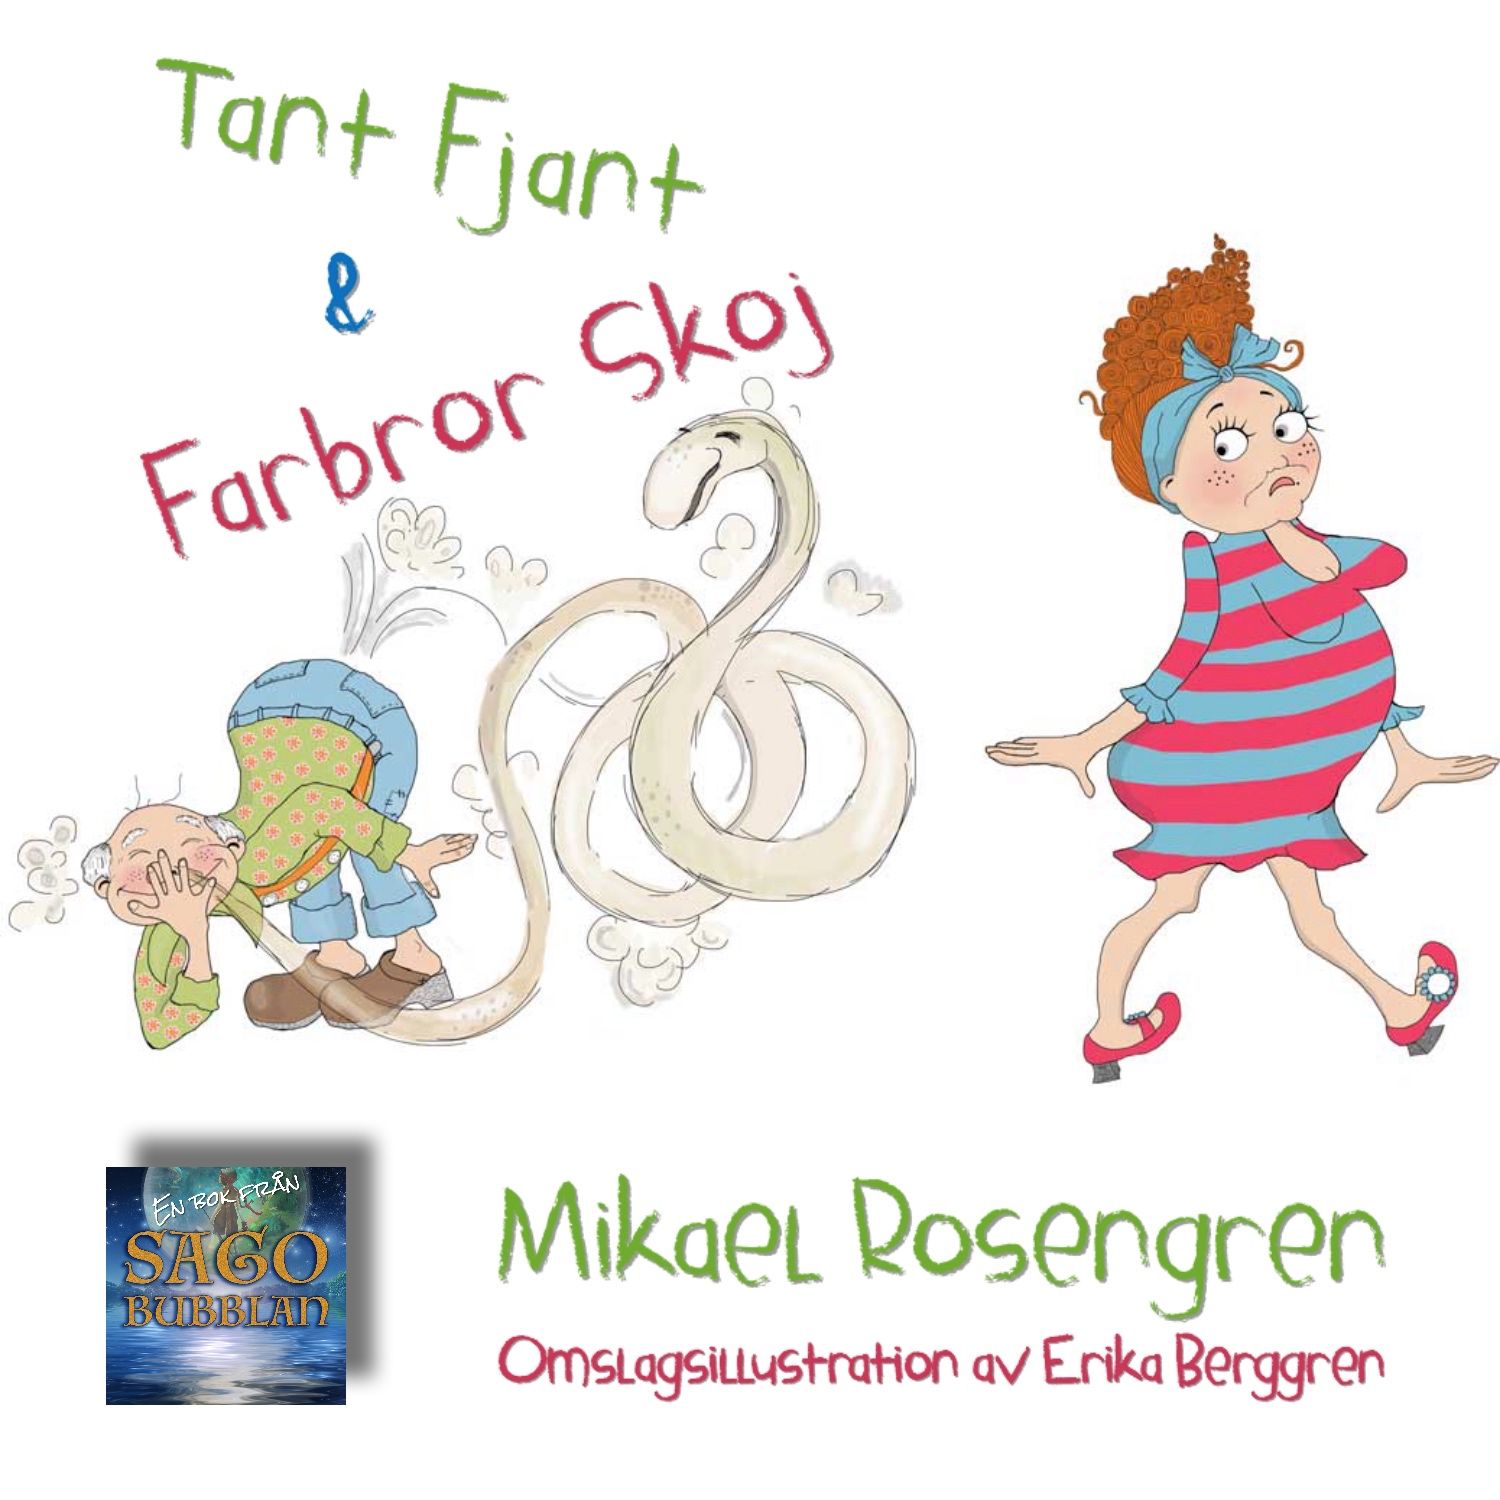 Tant Fjant och Farbror Skoj, ljudbok av Mikael Rosengren